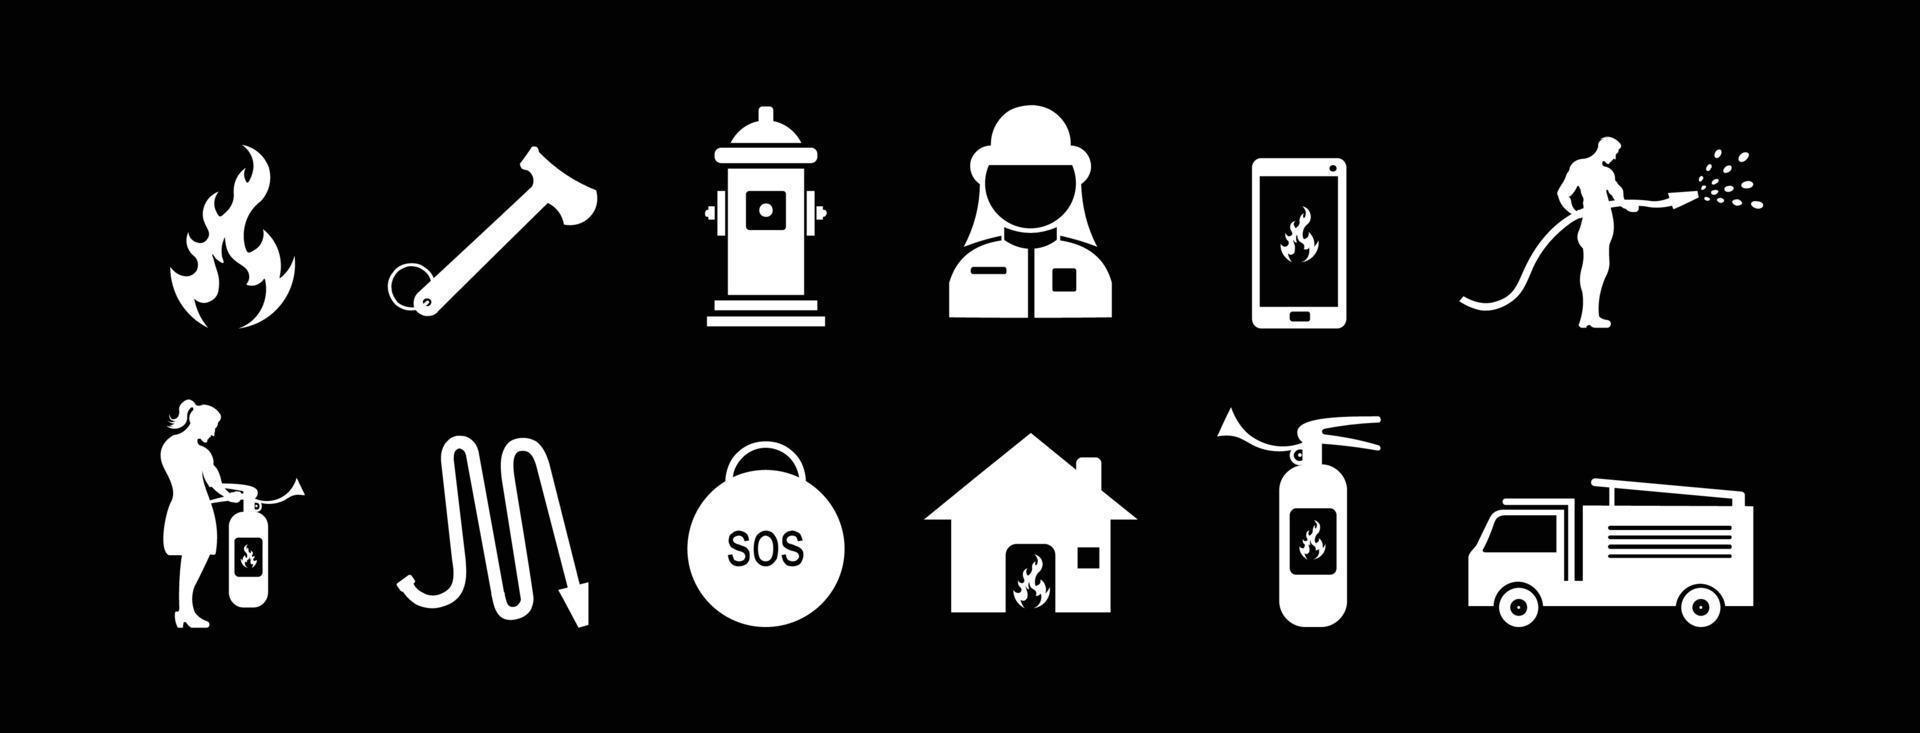 conjunto de ícones de bombeiro, sinal ou símbolo do corpo de bombeiros, ilustração vetorial em fundo branco e preto. vetor